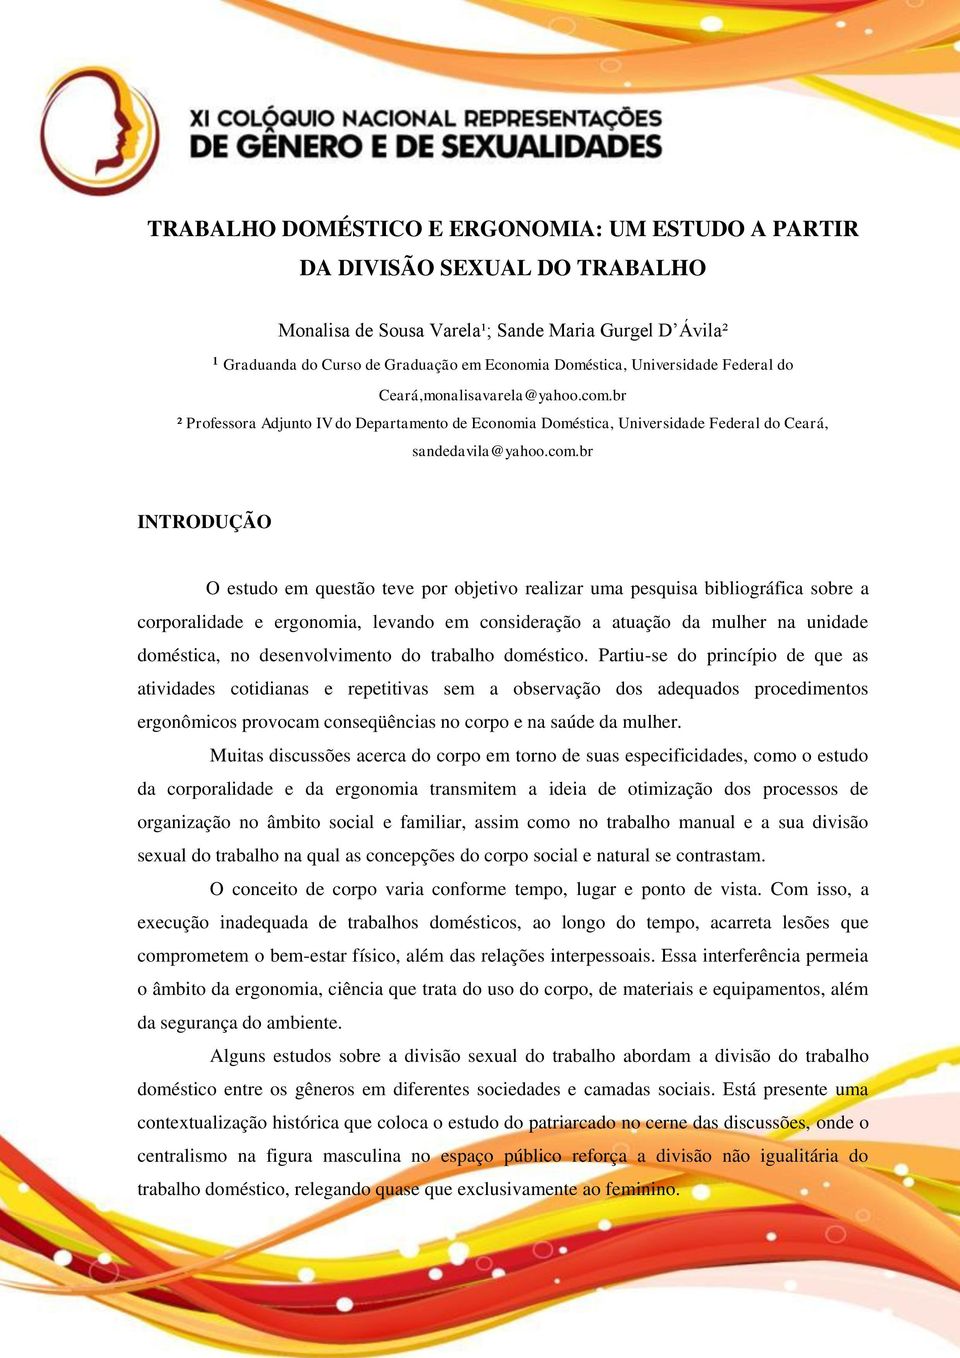 br ² Professora Adjunto IV do Departamento de Economia Doméstica, Universidade Federal do Ceará, sandedavila@yahoo.com.